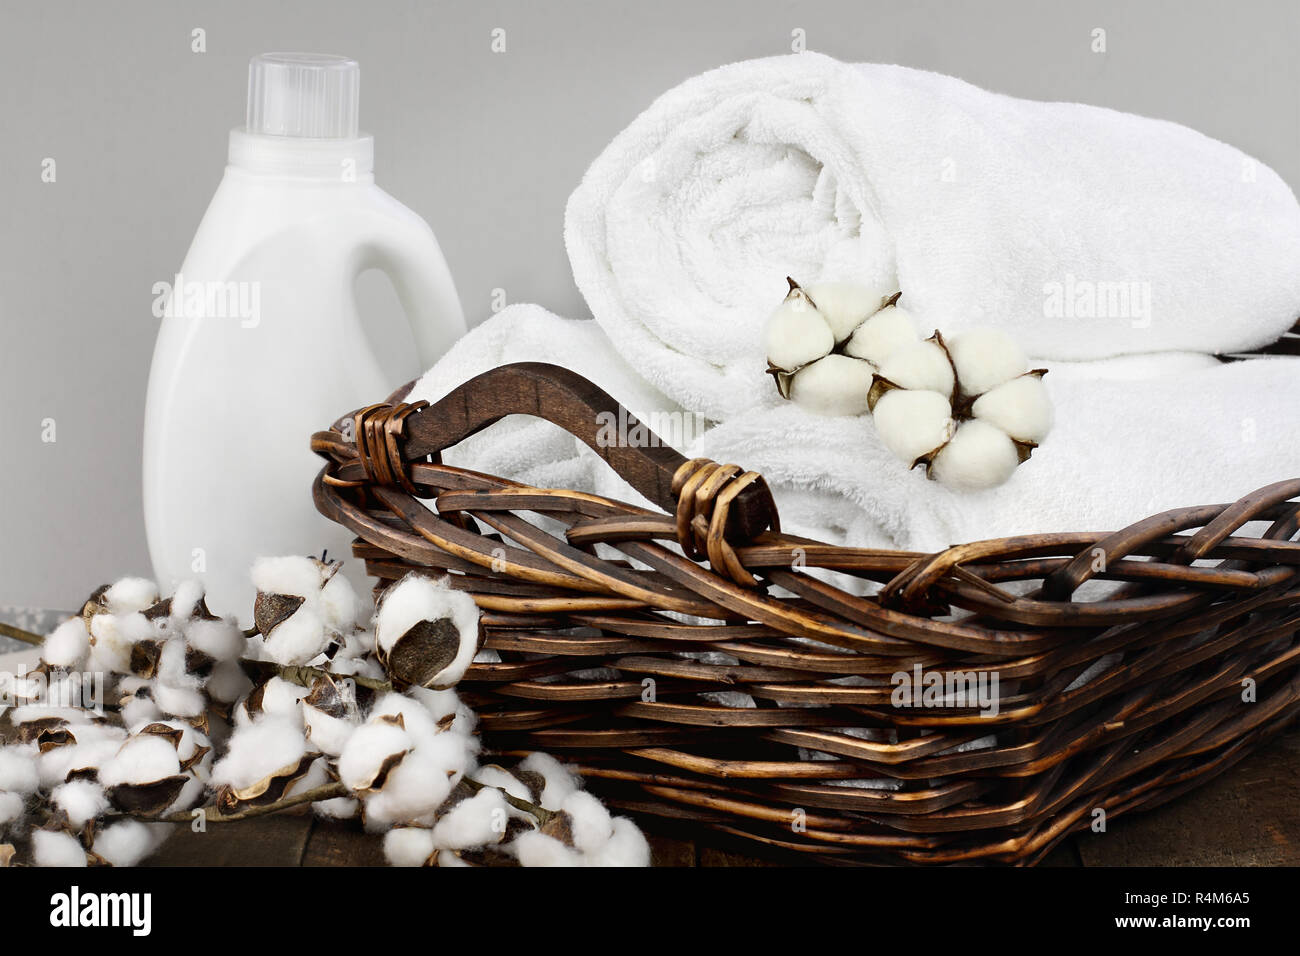 Wäsche Korb weiße flauschige Handtücher, Baumwolle, Blumen und eine Flasche flüssige Seife gegen einen unscharfen Hintergrund grau. Stockfoto